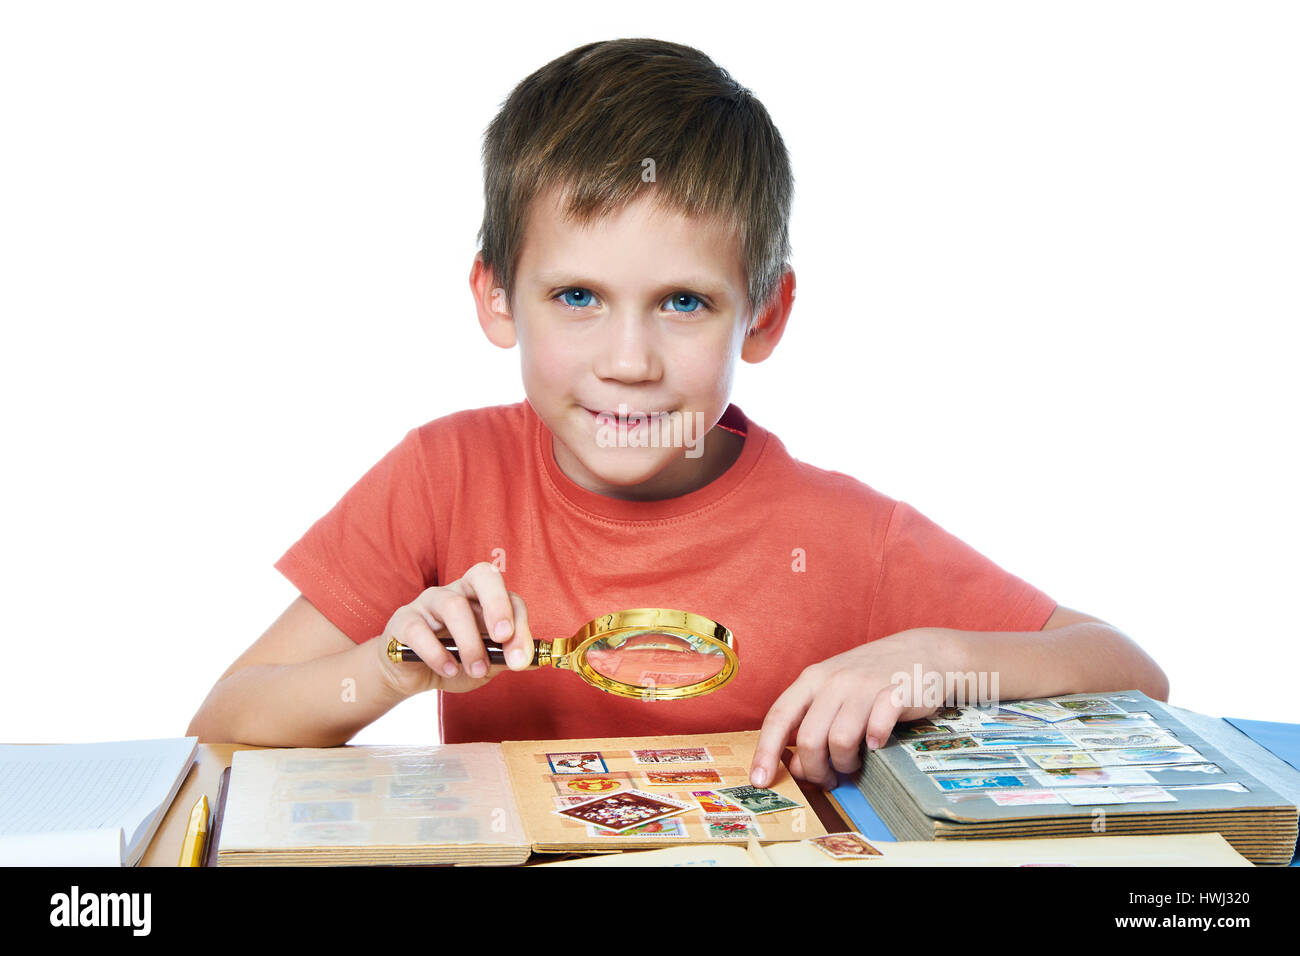 Niño Inteligente Usando Lupa Para Leer Libros Durante Los Estudios Fotos,  retratos, imágenes y fotografía de archivo libres de derecho. Image  169603985